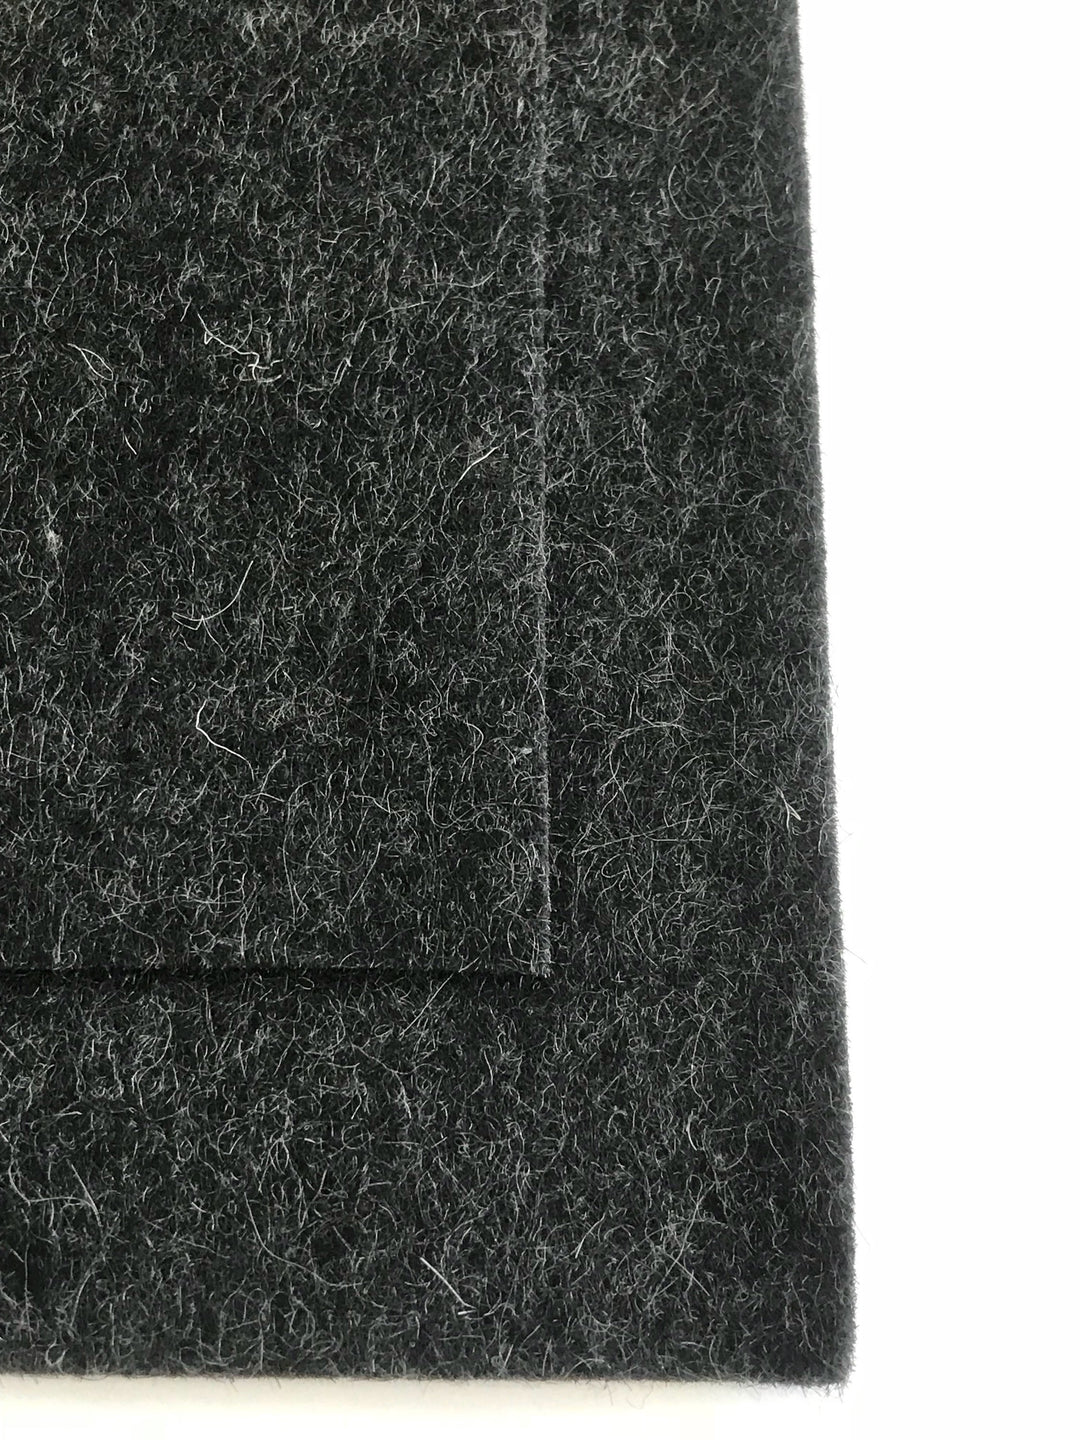 Feutre de laine mérinos moucheté gris anthracite de 1 mm, feuille de 8 x 11 po - N° G-1-9